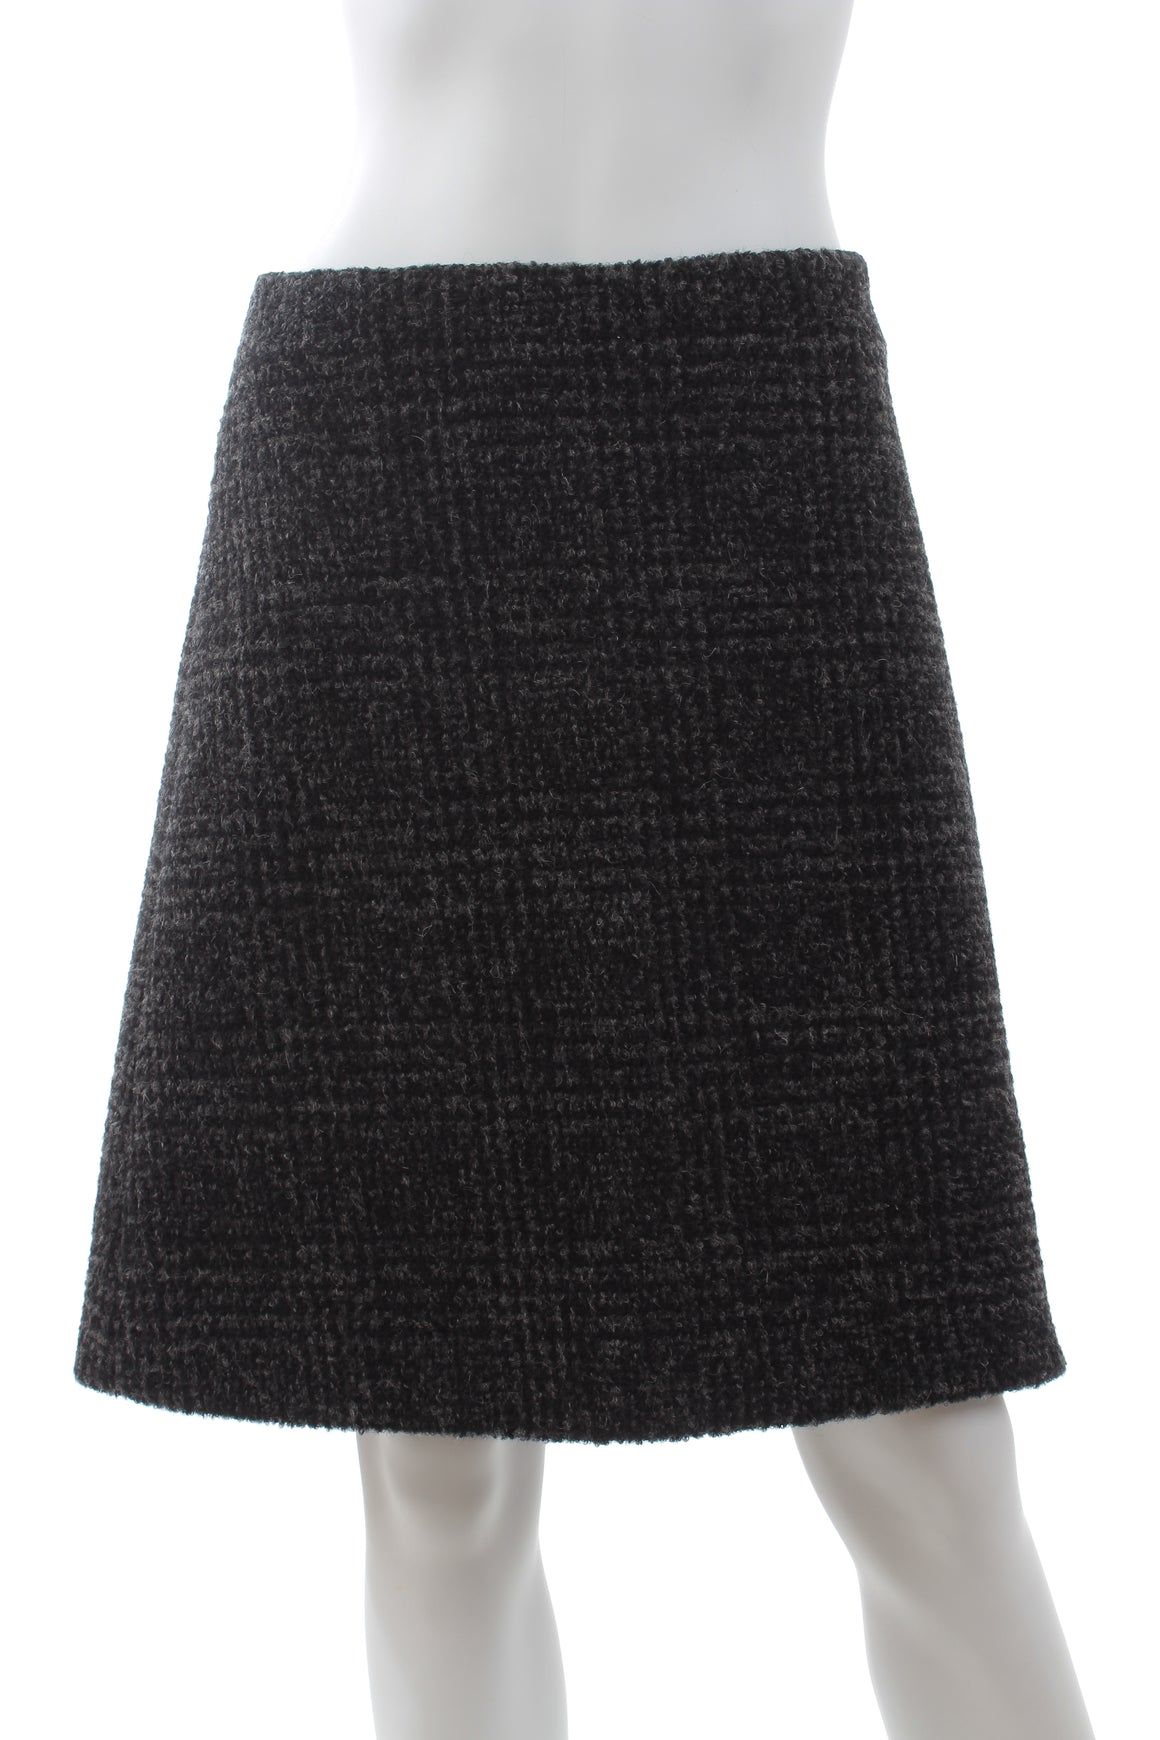 Proenza Schouler Plaid Wool-Blend Skirt *Fall 2020 Runway Collection*